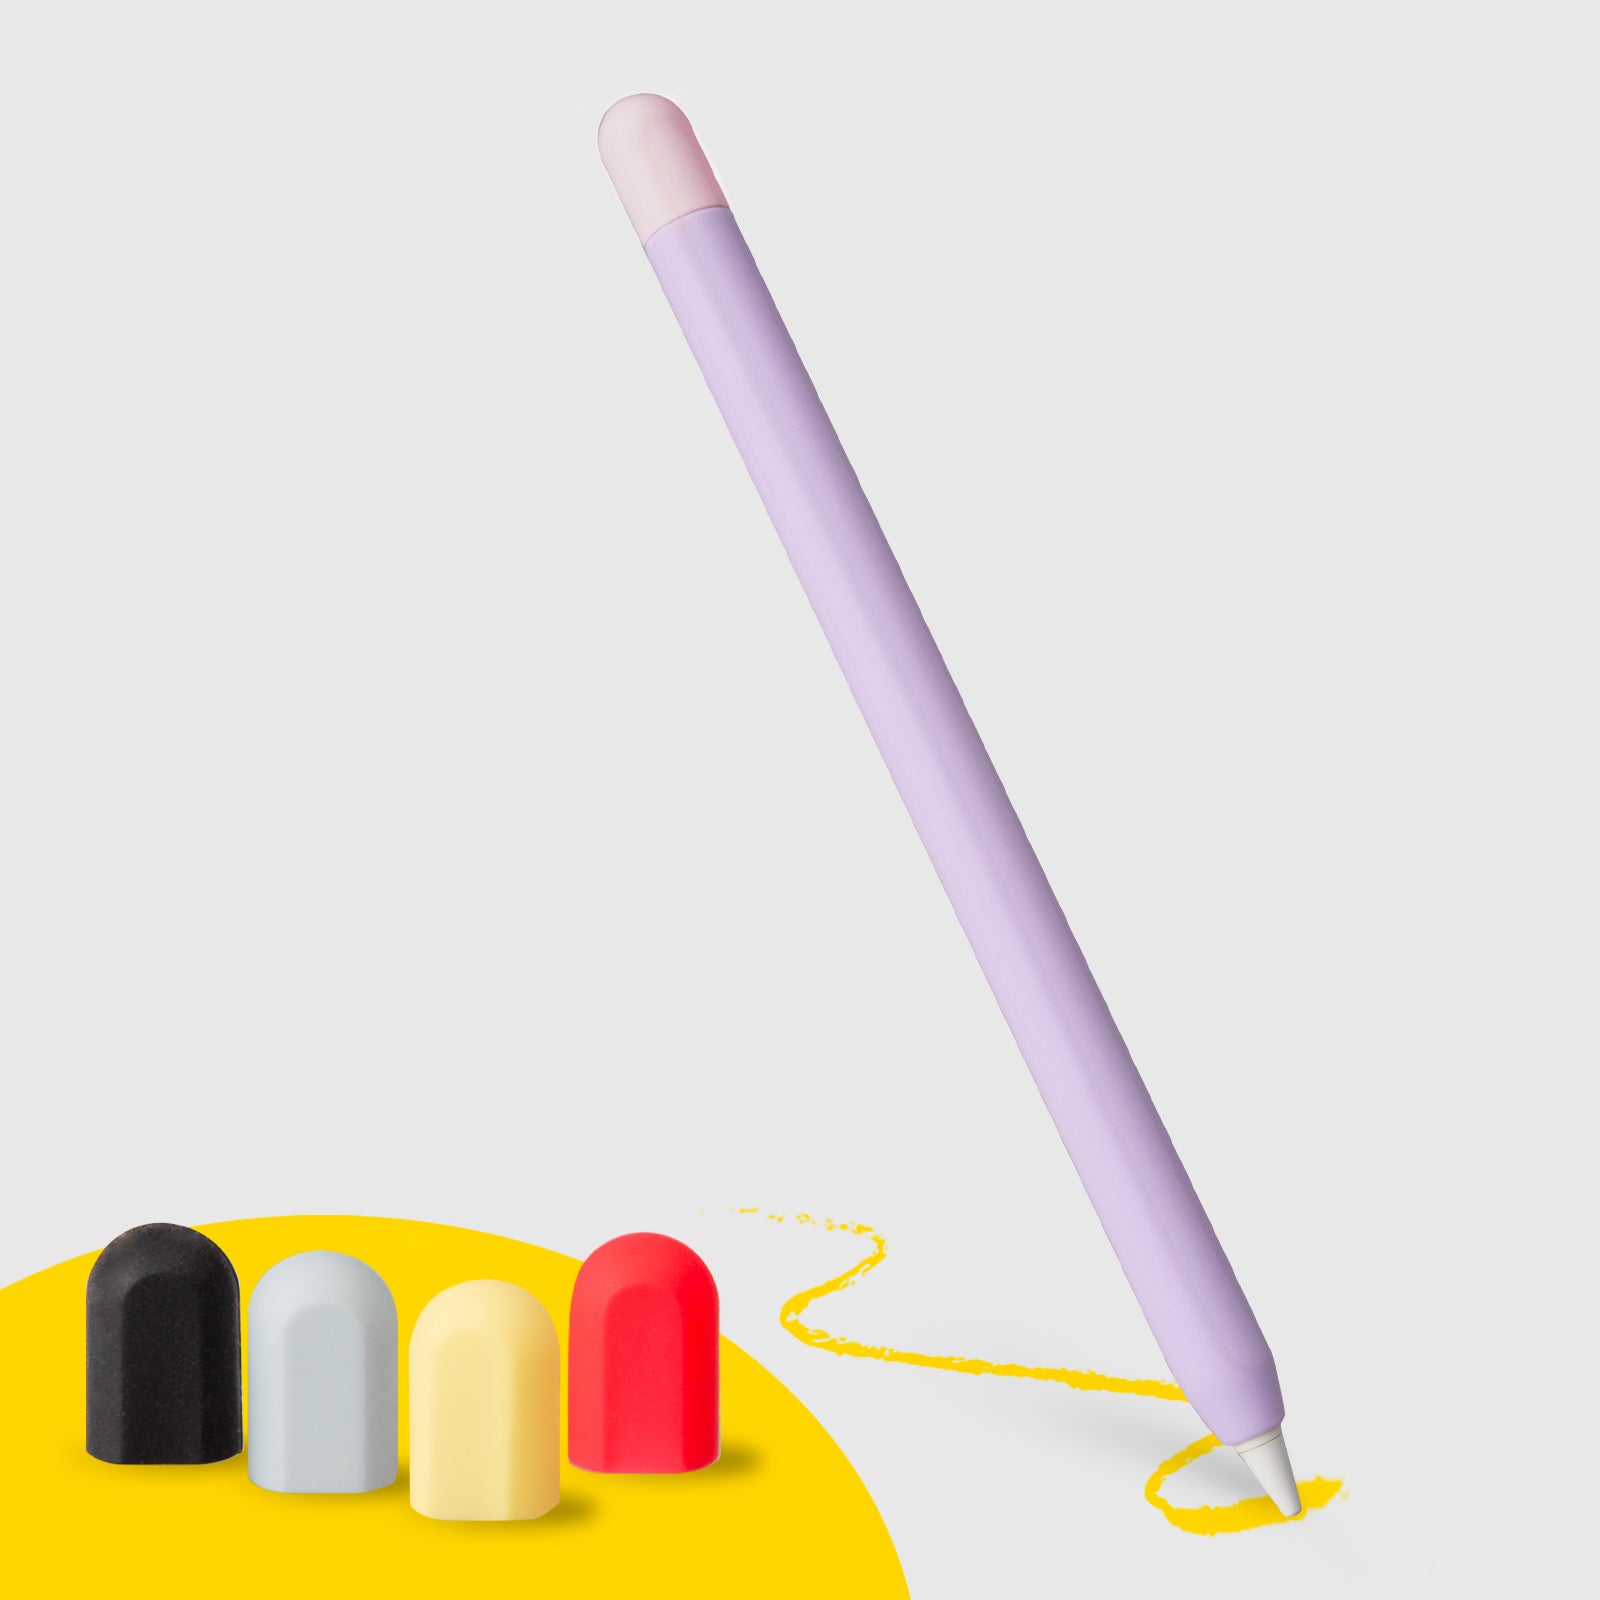 Funda piel lila para Apple Pencil 1ª y 2ª generación con 5 capuchones de colores